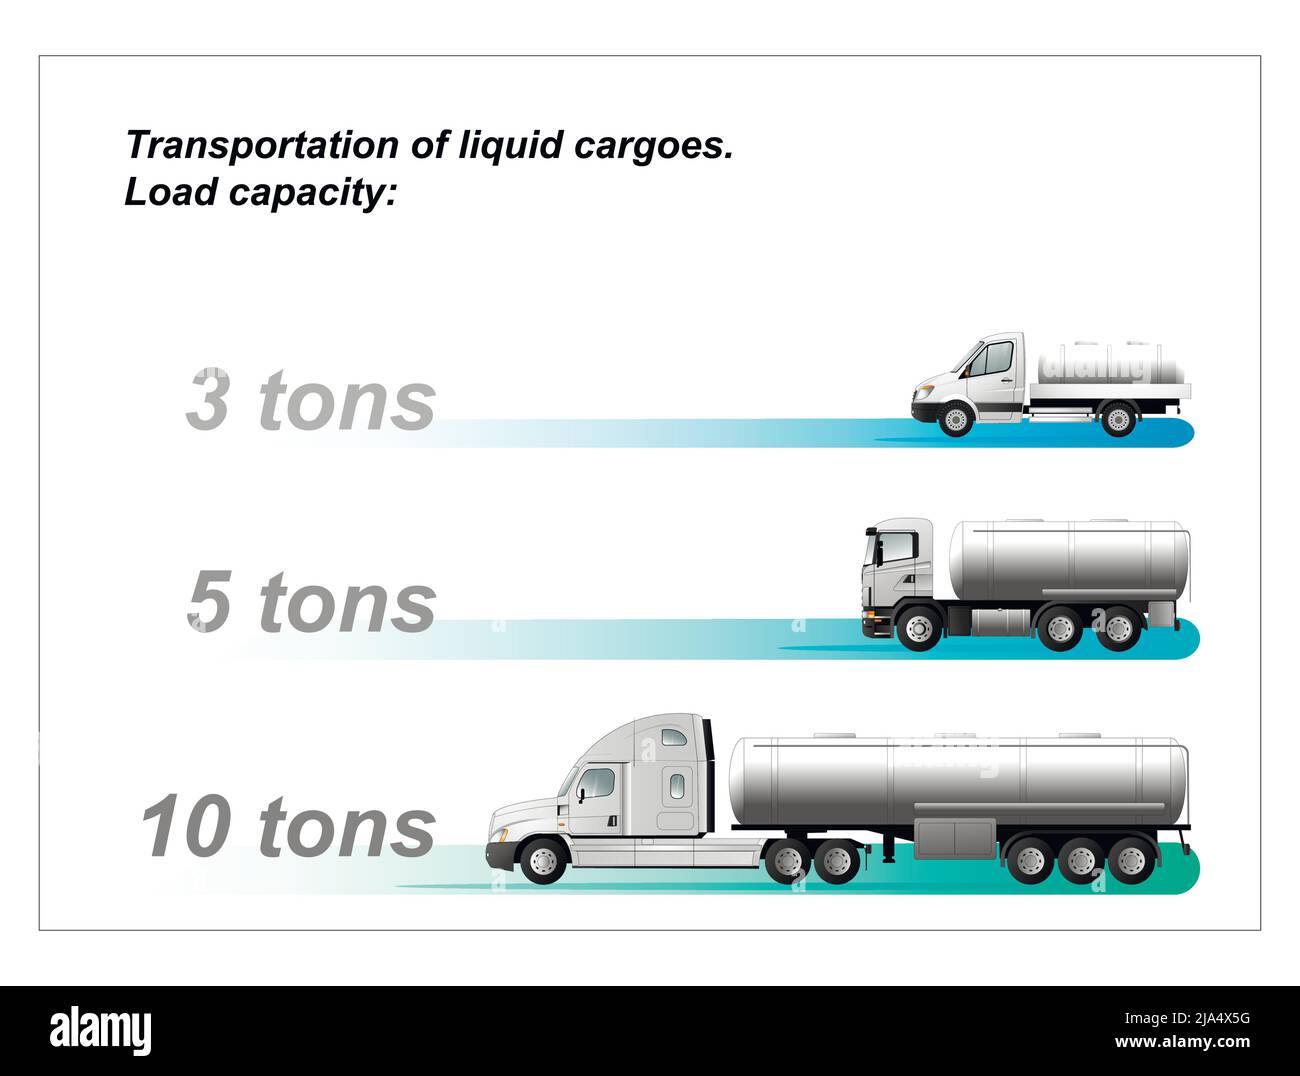 Infografiken der Tragfähigkeit von Fahrzeugen für den Transport von flüssigen Gütern mit einer Tragfähigkeit von 10, 3, 5 Tonnen. Flache Vektordarstellung Stock Vektor